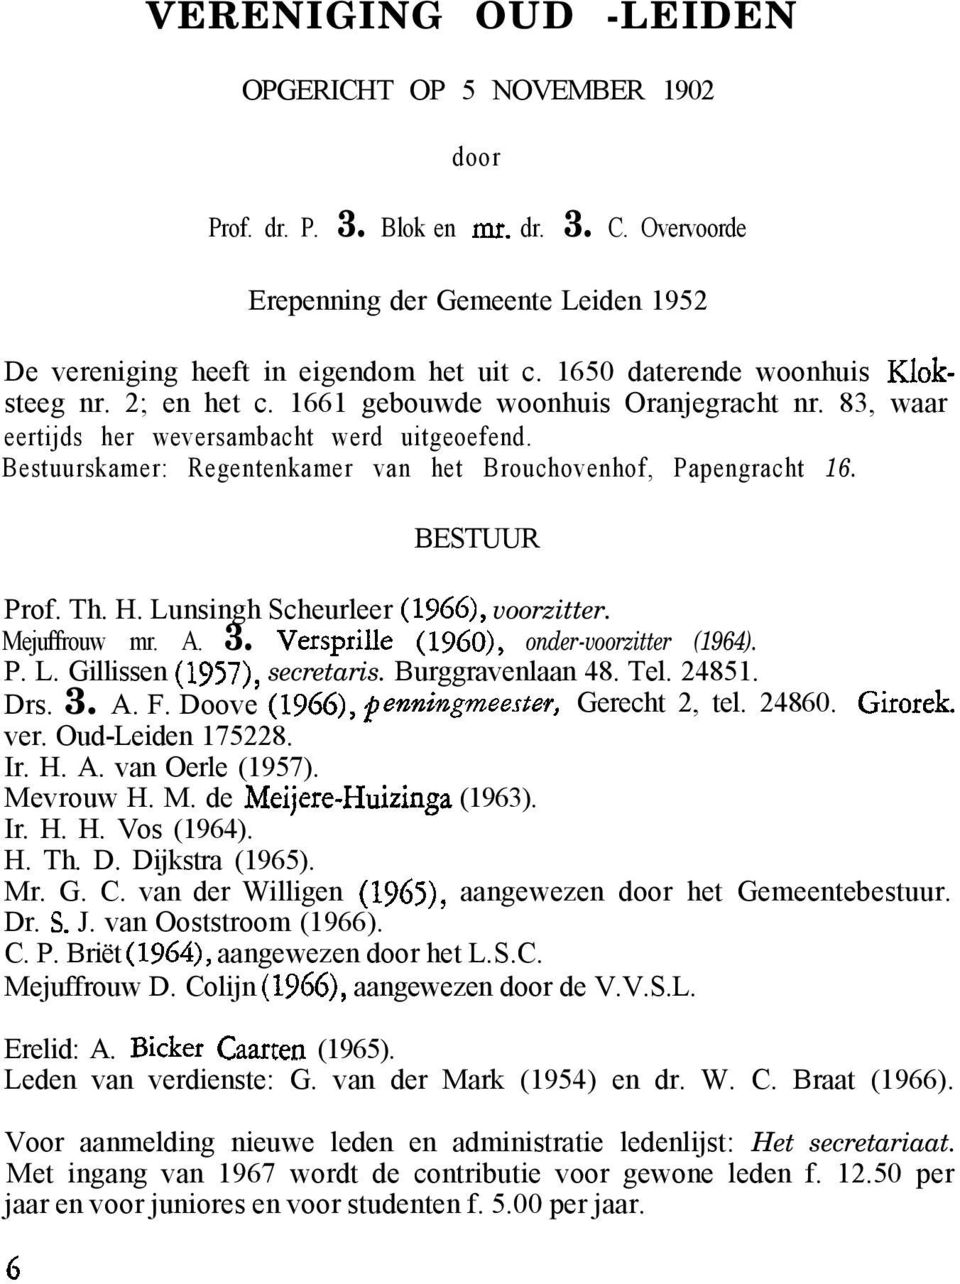 Bestuurskamer: Regentenkamer van het Brouchovenhof, Papengracht 16. BESTUUR Prof. Th. H. Lunsingh Scheurleer (1966), voorzitter. Mejuffrouw mr. A. 3. Versprille (IgGO), onder-voorzitter (1964). P. L. Gillissen (1957), secretaris.